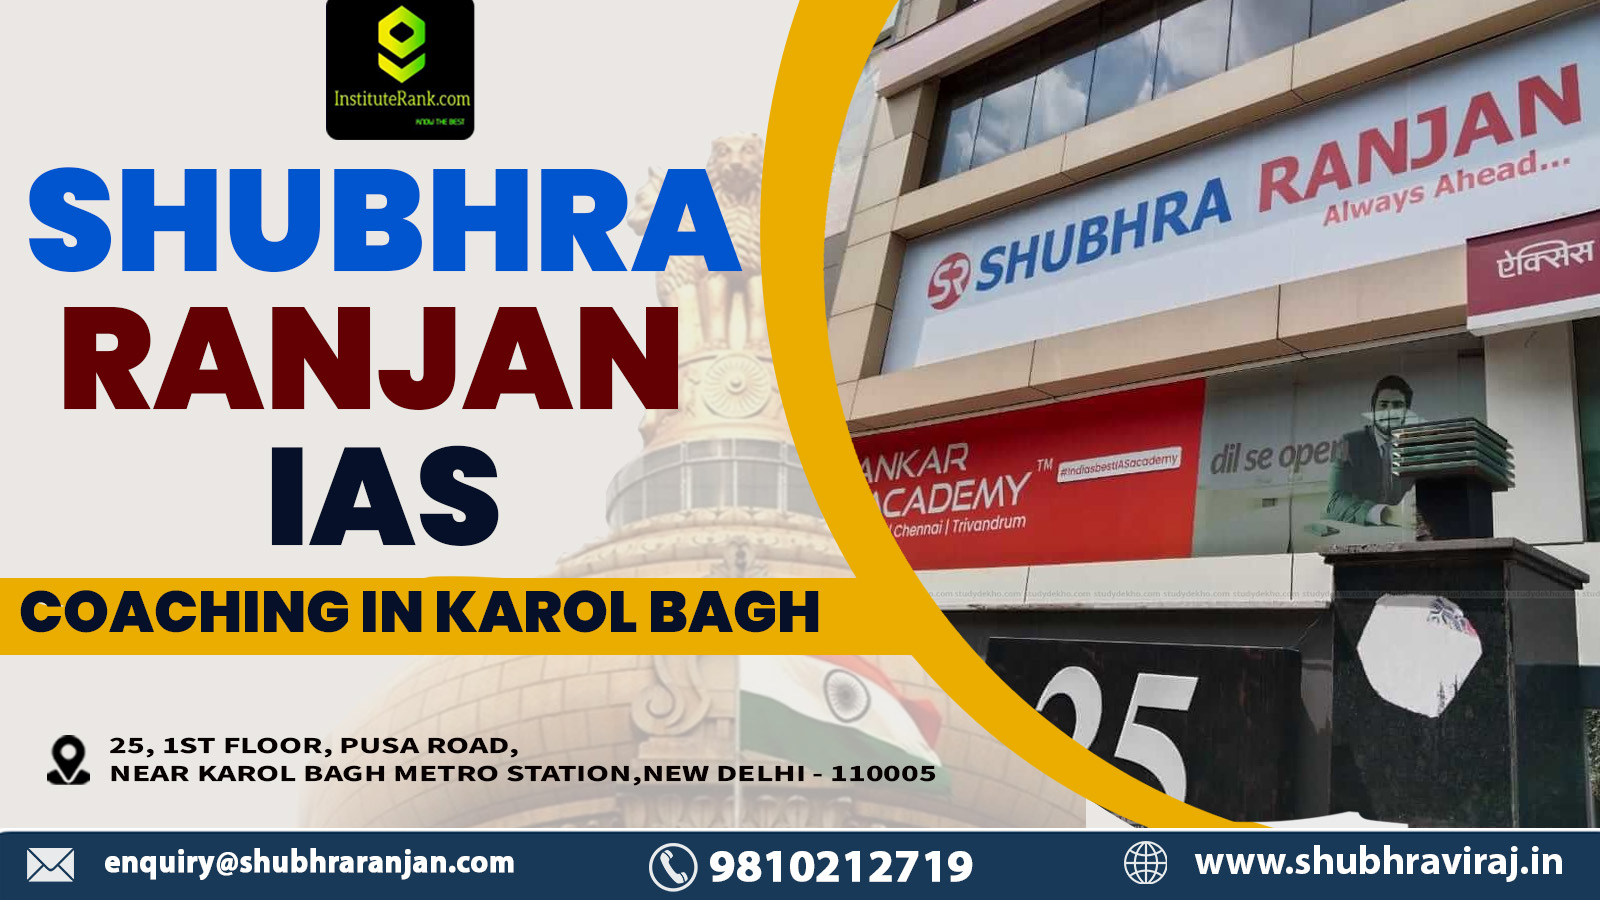 Shubhra Ranjan IAS Coaching in Karol Bagh